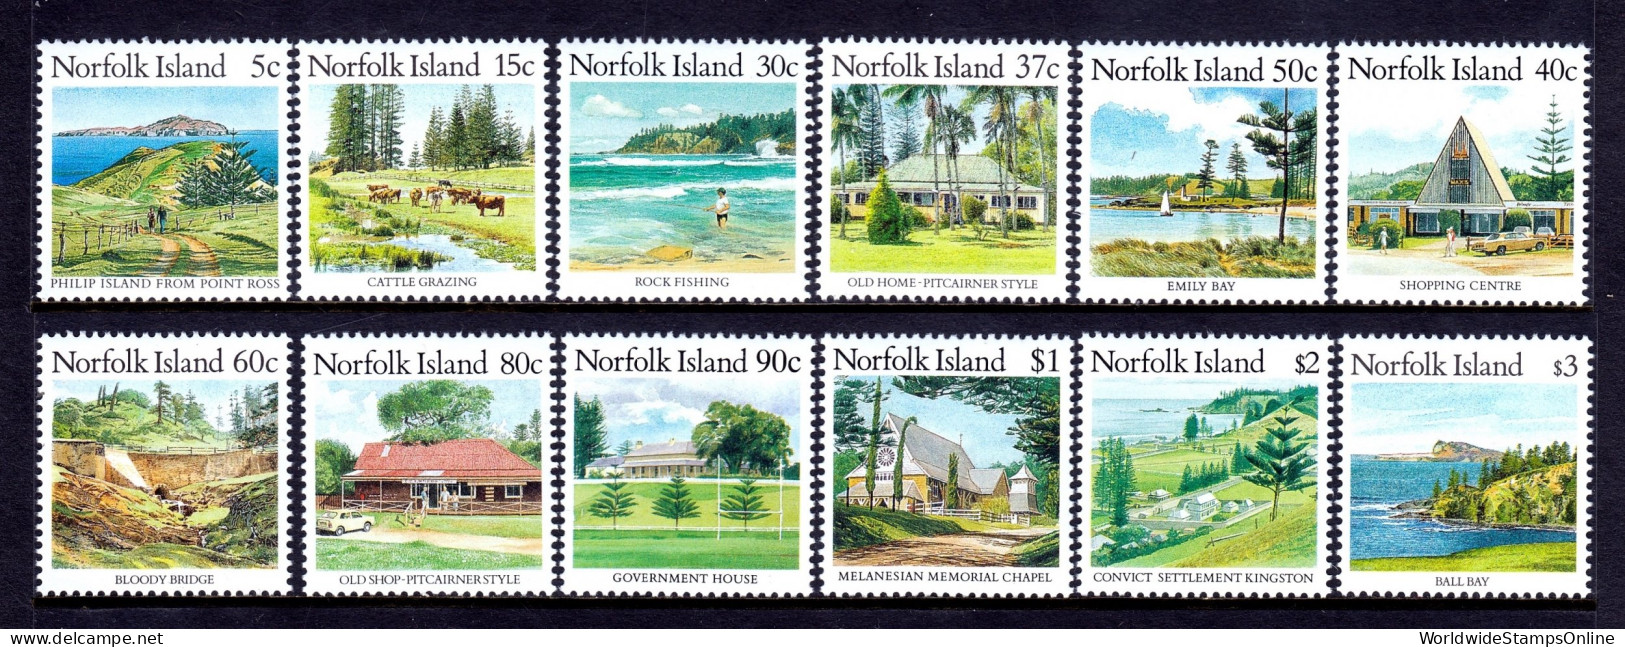 Norfolk Island - Scott #404//415 - MNH - Short Set, 1988 Issues Only - SCV $15 - Isla Norfolk